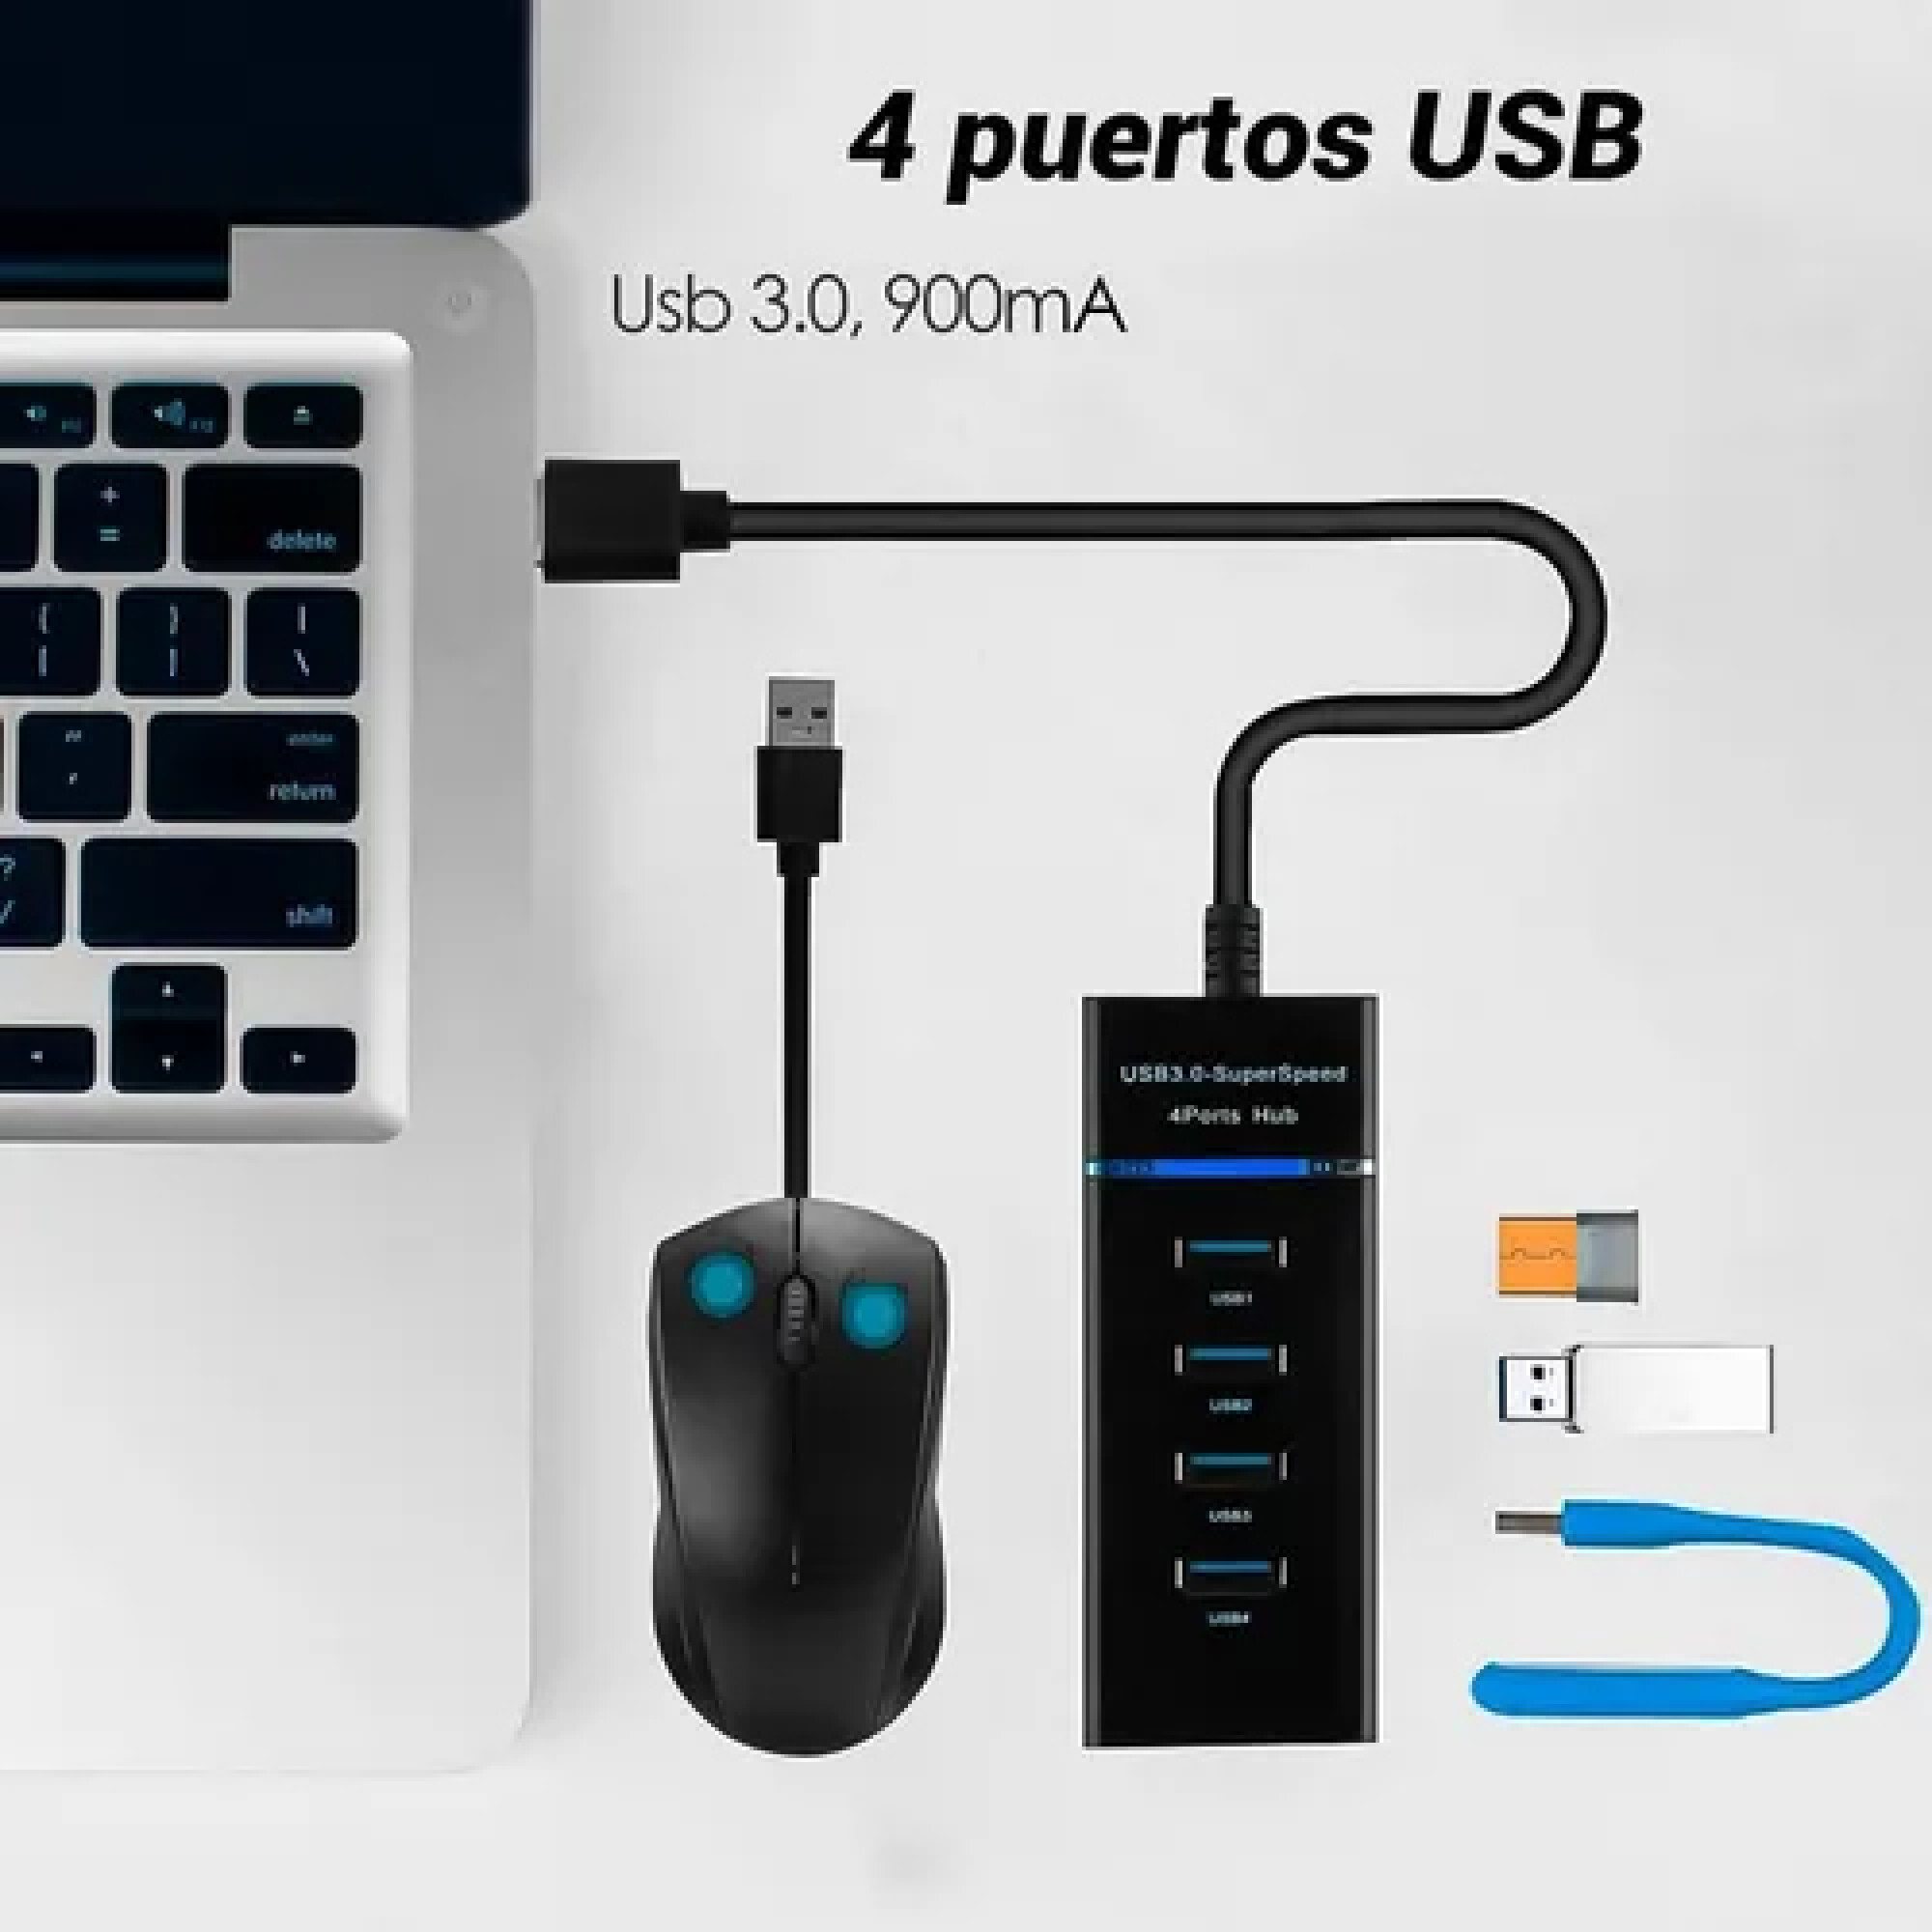 HUB zapatilla USB 3.0 alta velocidad con 4 puertos — LST